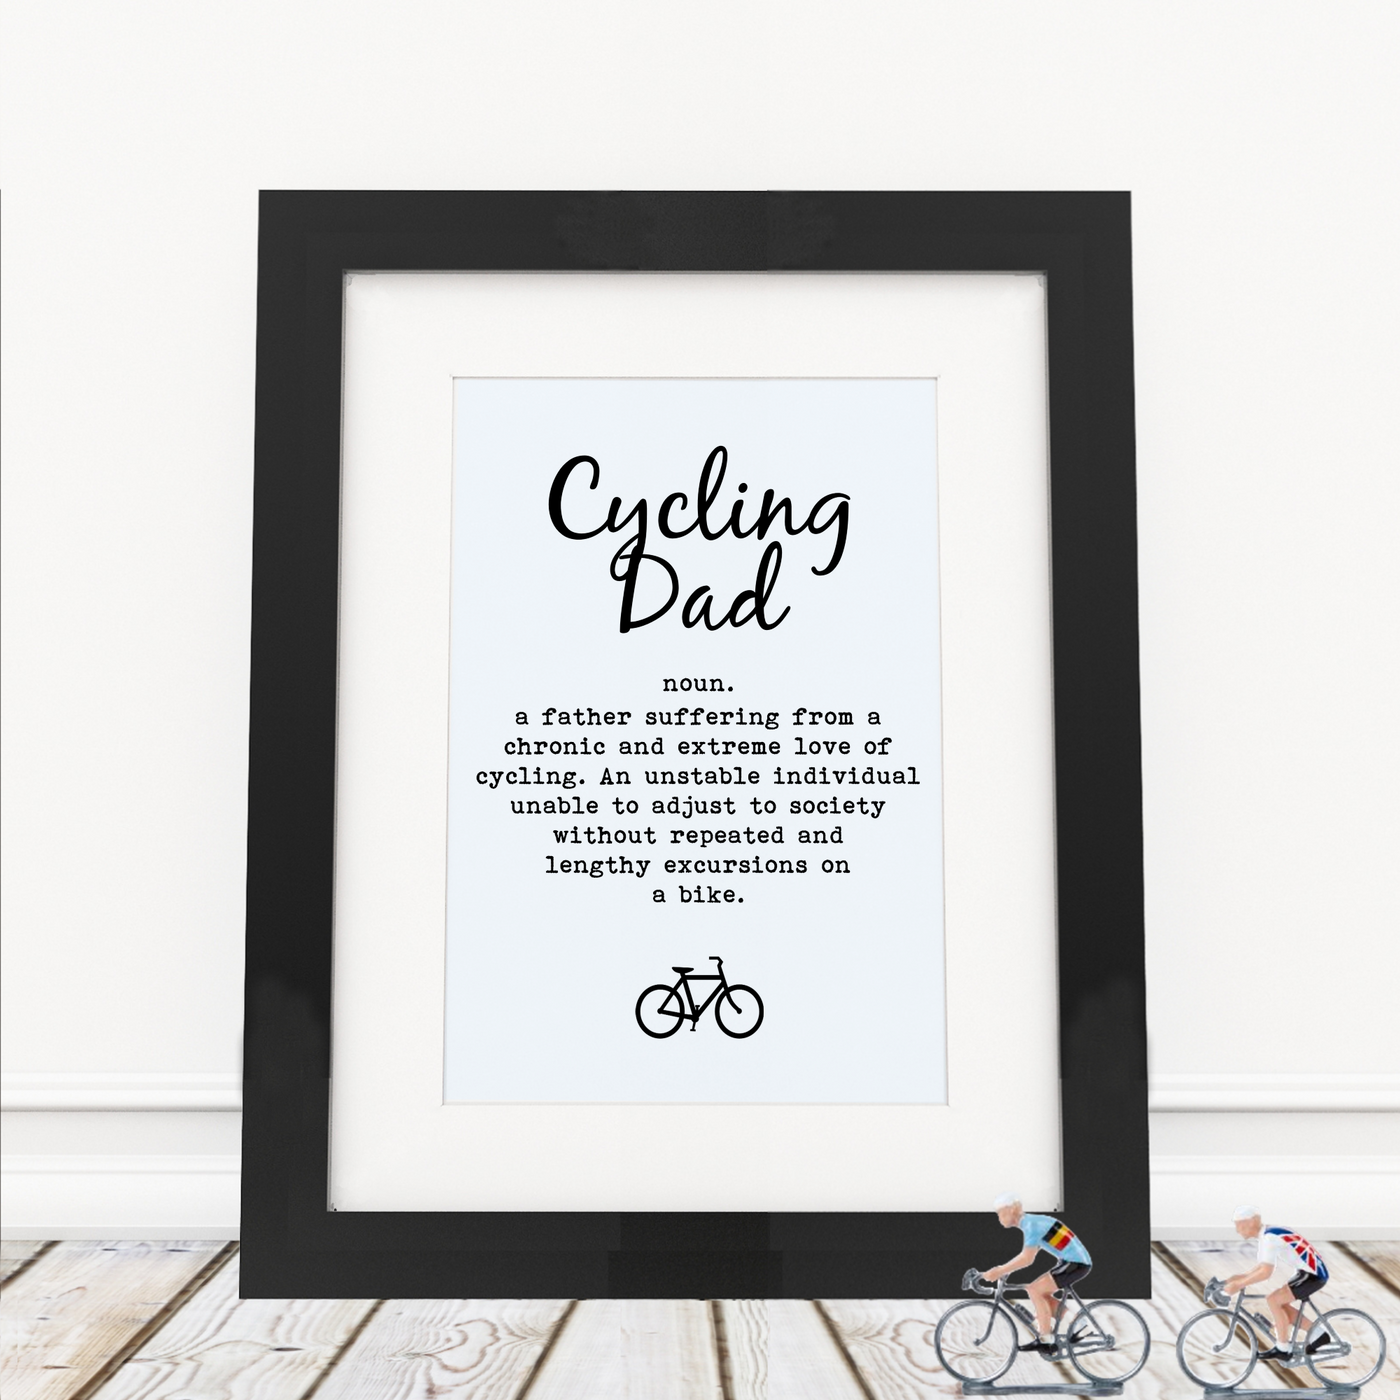 Cycling Dad - Framed Print